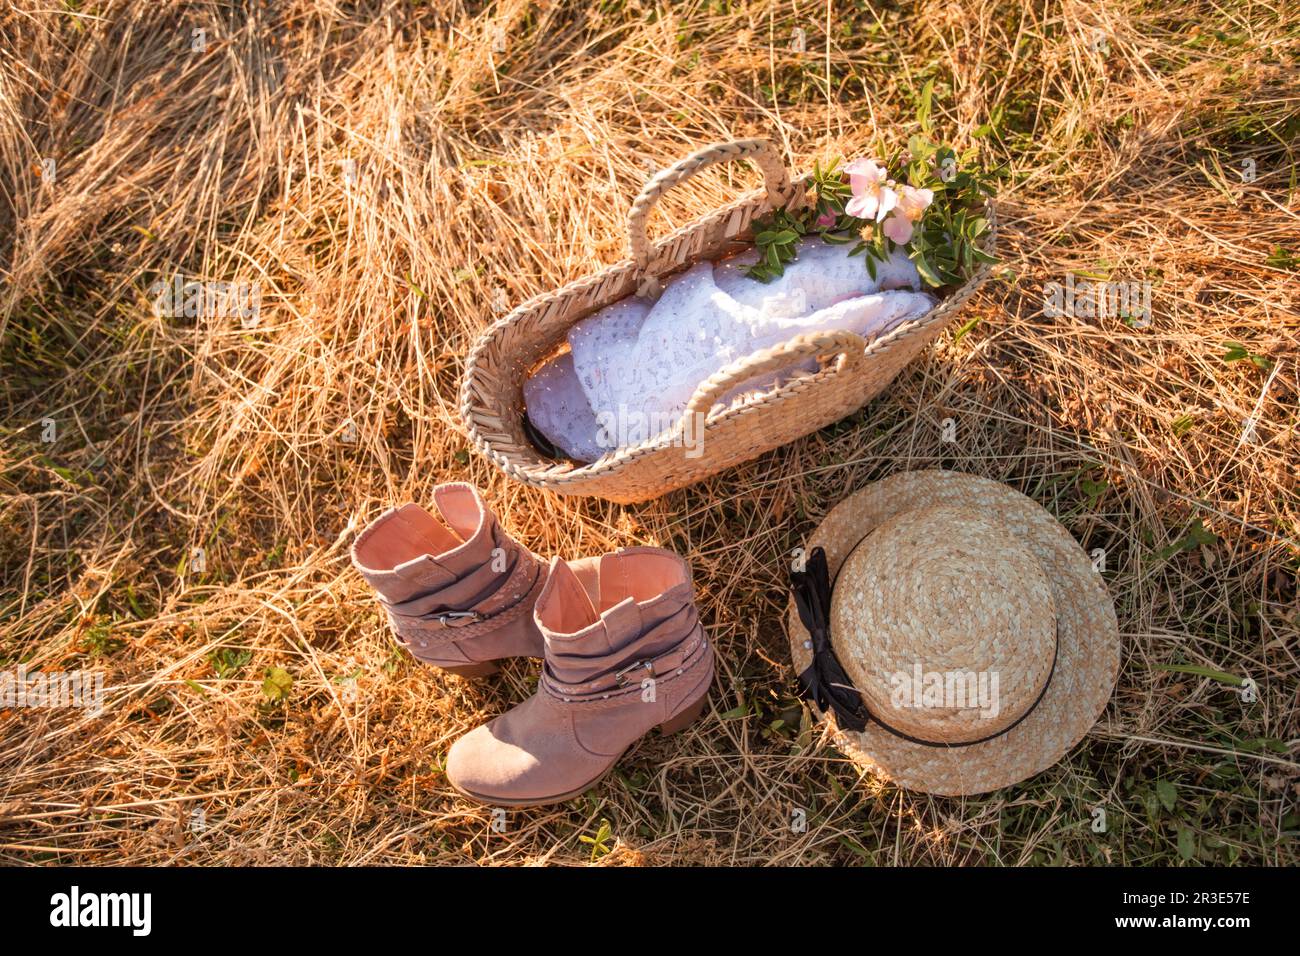 Vue de dessus sac en osier avec tissu blanc à l'intérieur, paire de bottes  roses et chapeau de paille placé près de la pile de foin sec. Photo  extérieure d'été de style